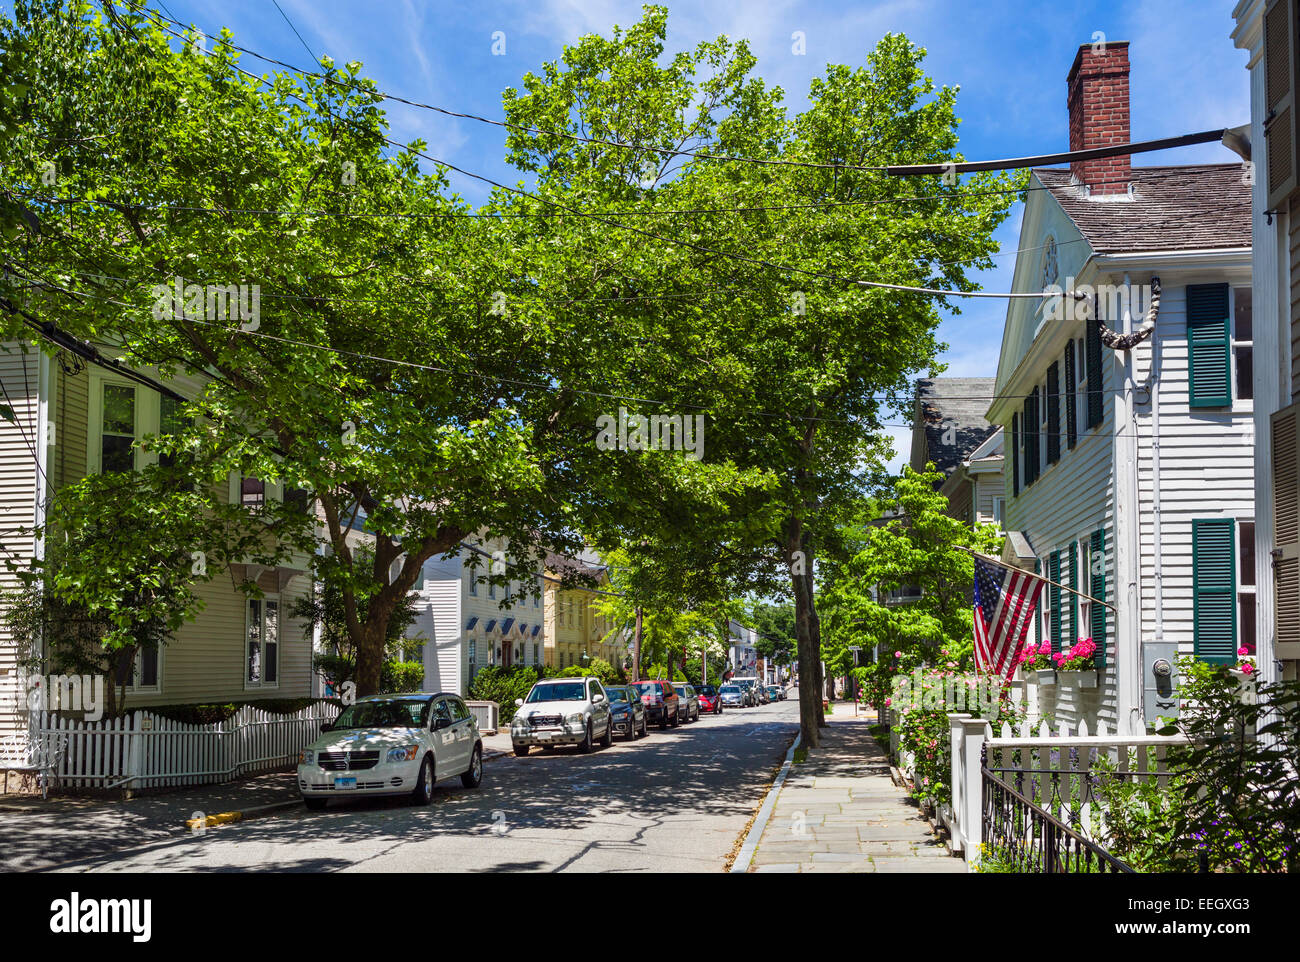 Rue principale de la vieille ville historique de Stonington, Connecticut, USA Banque D'Images